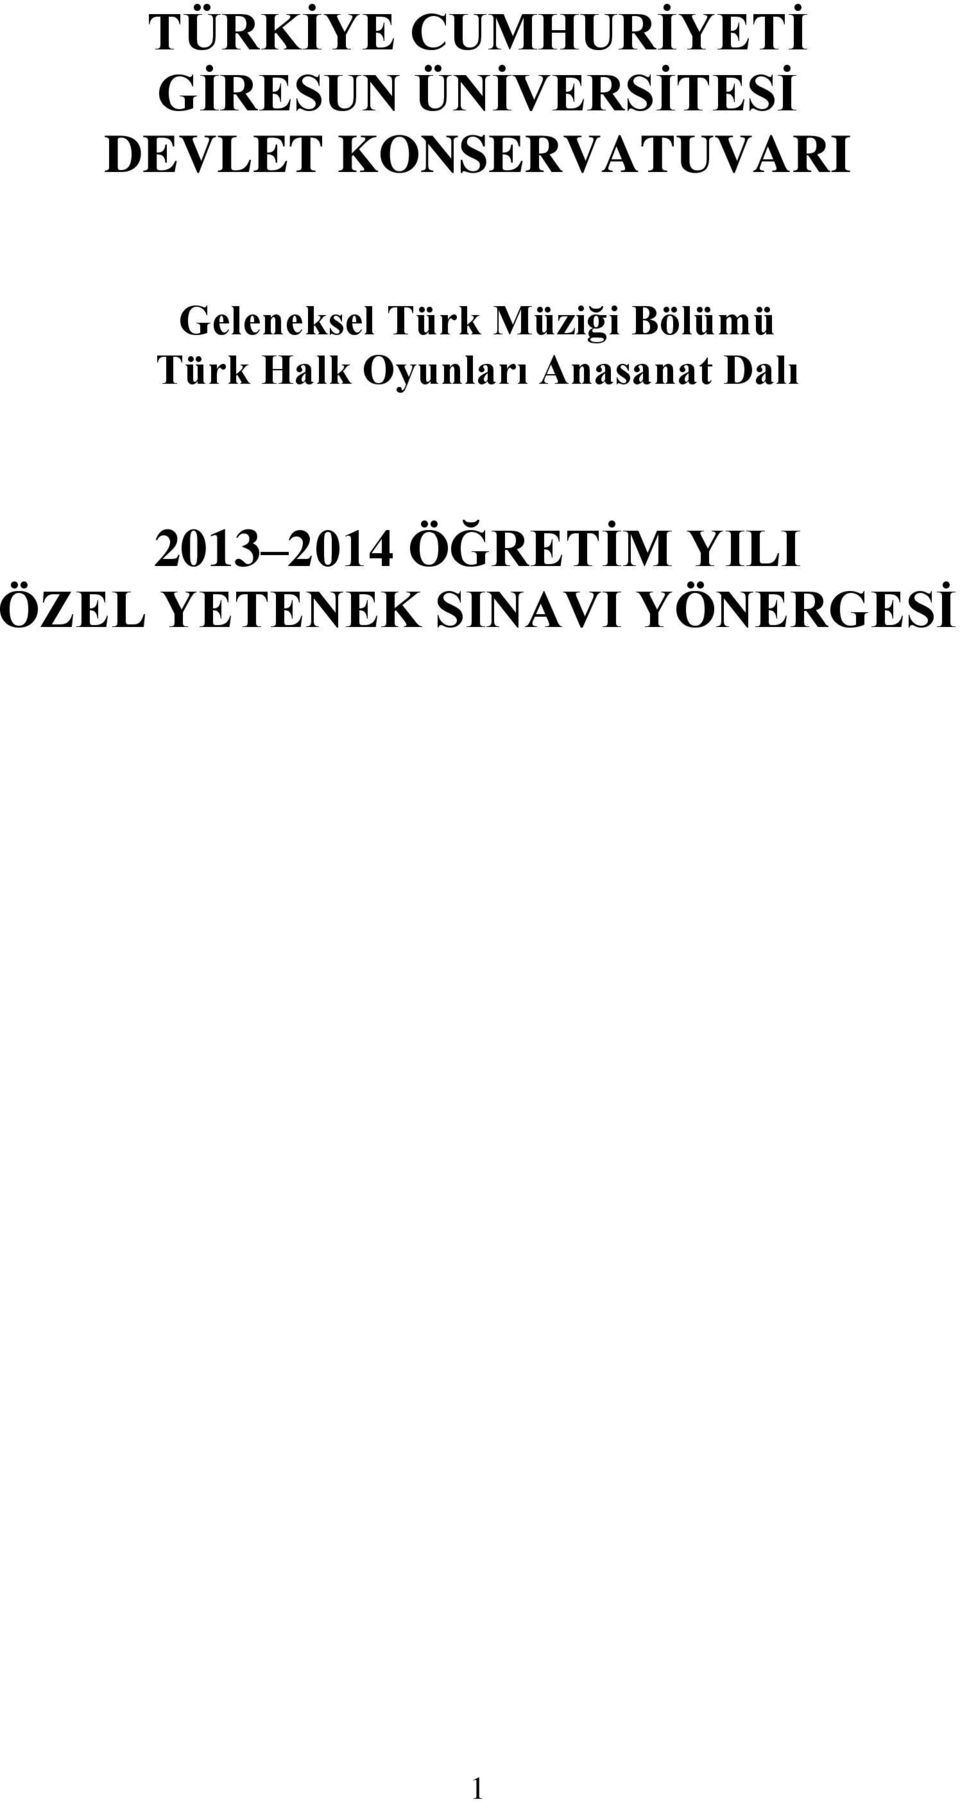 Bölümü Türk Halk Oyunları Anasanat Dalı 2013